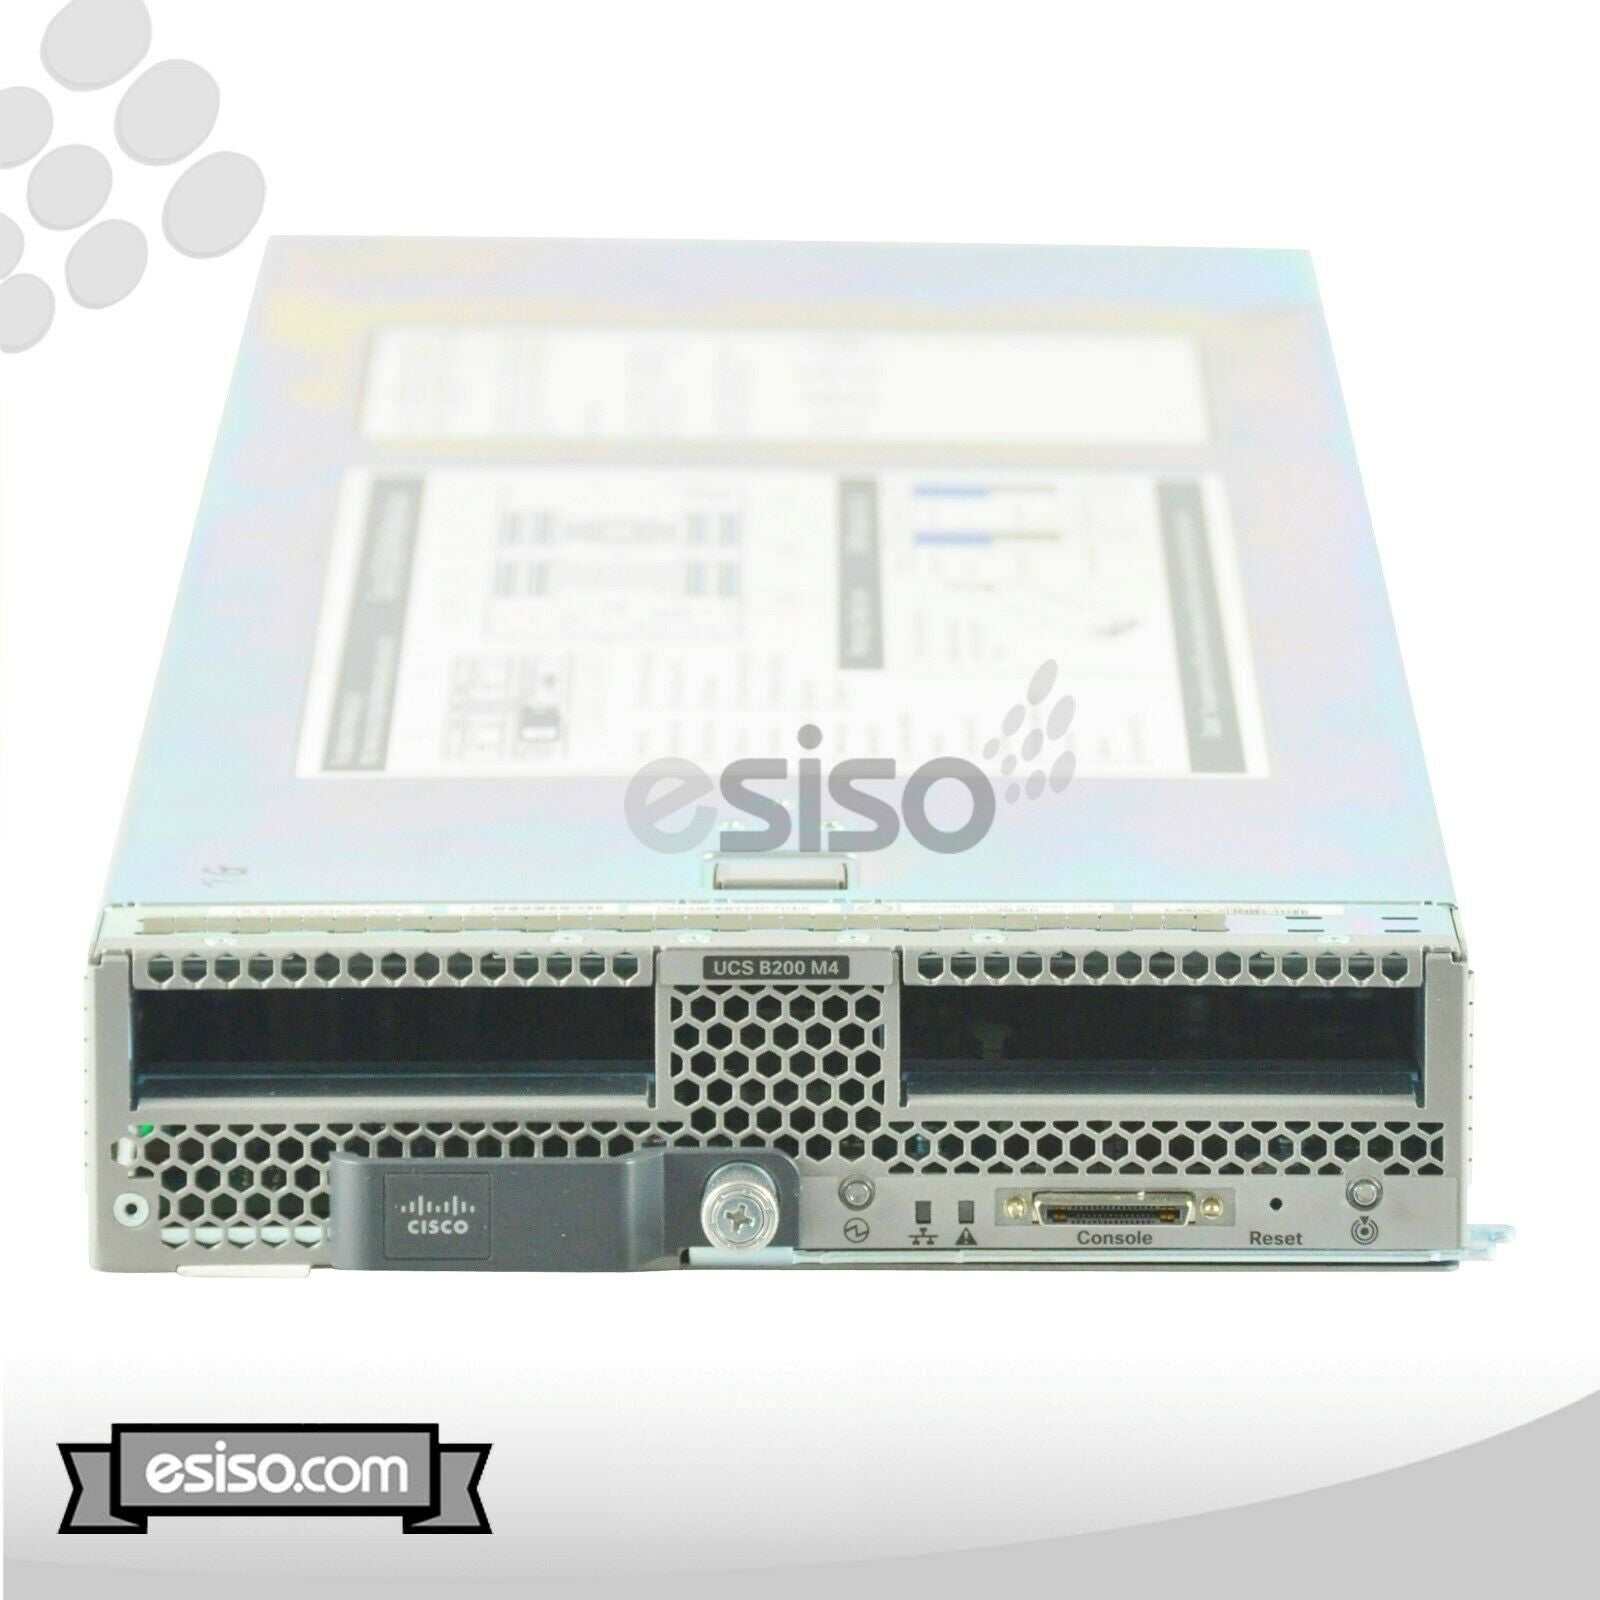 CISCO UCS B200 M4 BLADE 2x 12 CORE E5-2680v3 2.5GHz 32GB RAM 2x 600GB 15K SAS